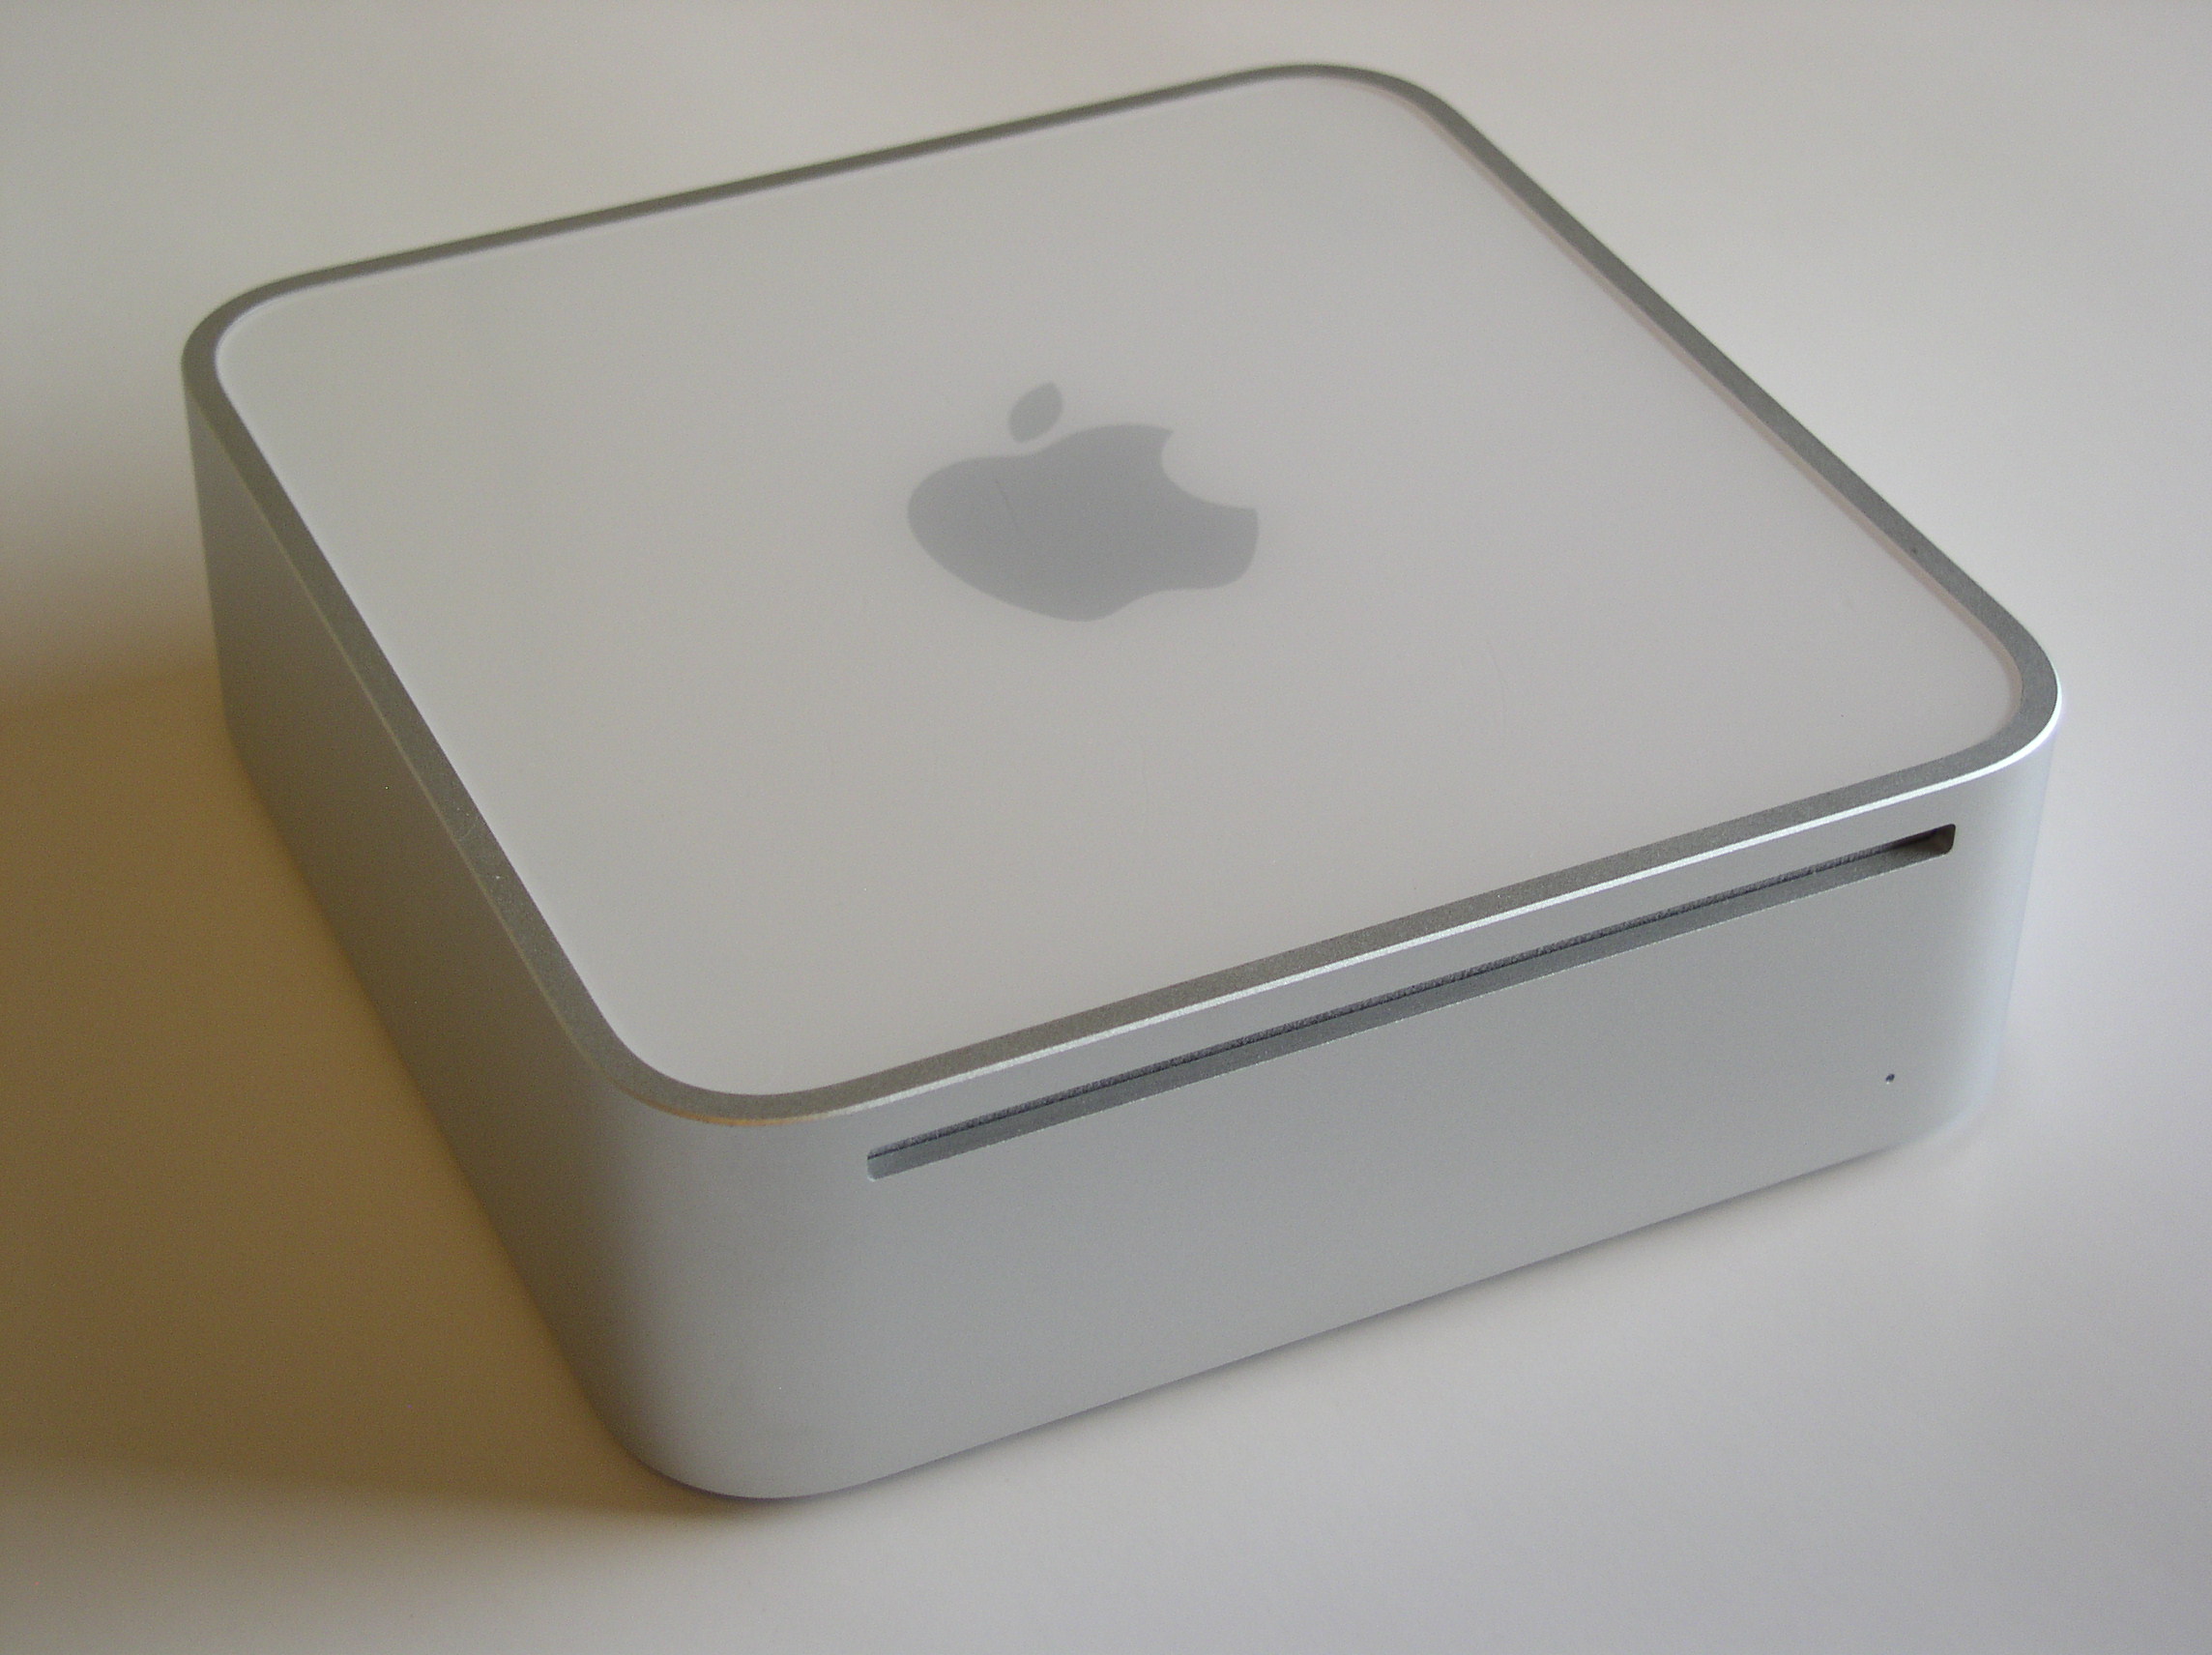 Predstavljanjem Mac Minija 2005. godine, Apple se iskupio za svoje grijehe počinjene predstavljanjem Mac Cubea. Također, Mini je bio računalo usmjereno na jeftiniji segment tržišta, koji je mnoge korisnike predstavio Apple platformi. Problema sa zagrijavanjem, kao kod Cubea, nije bilo.
